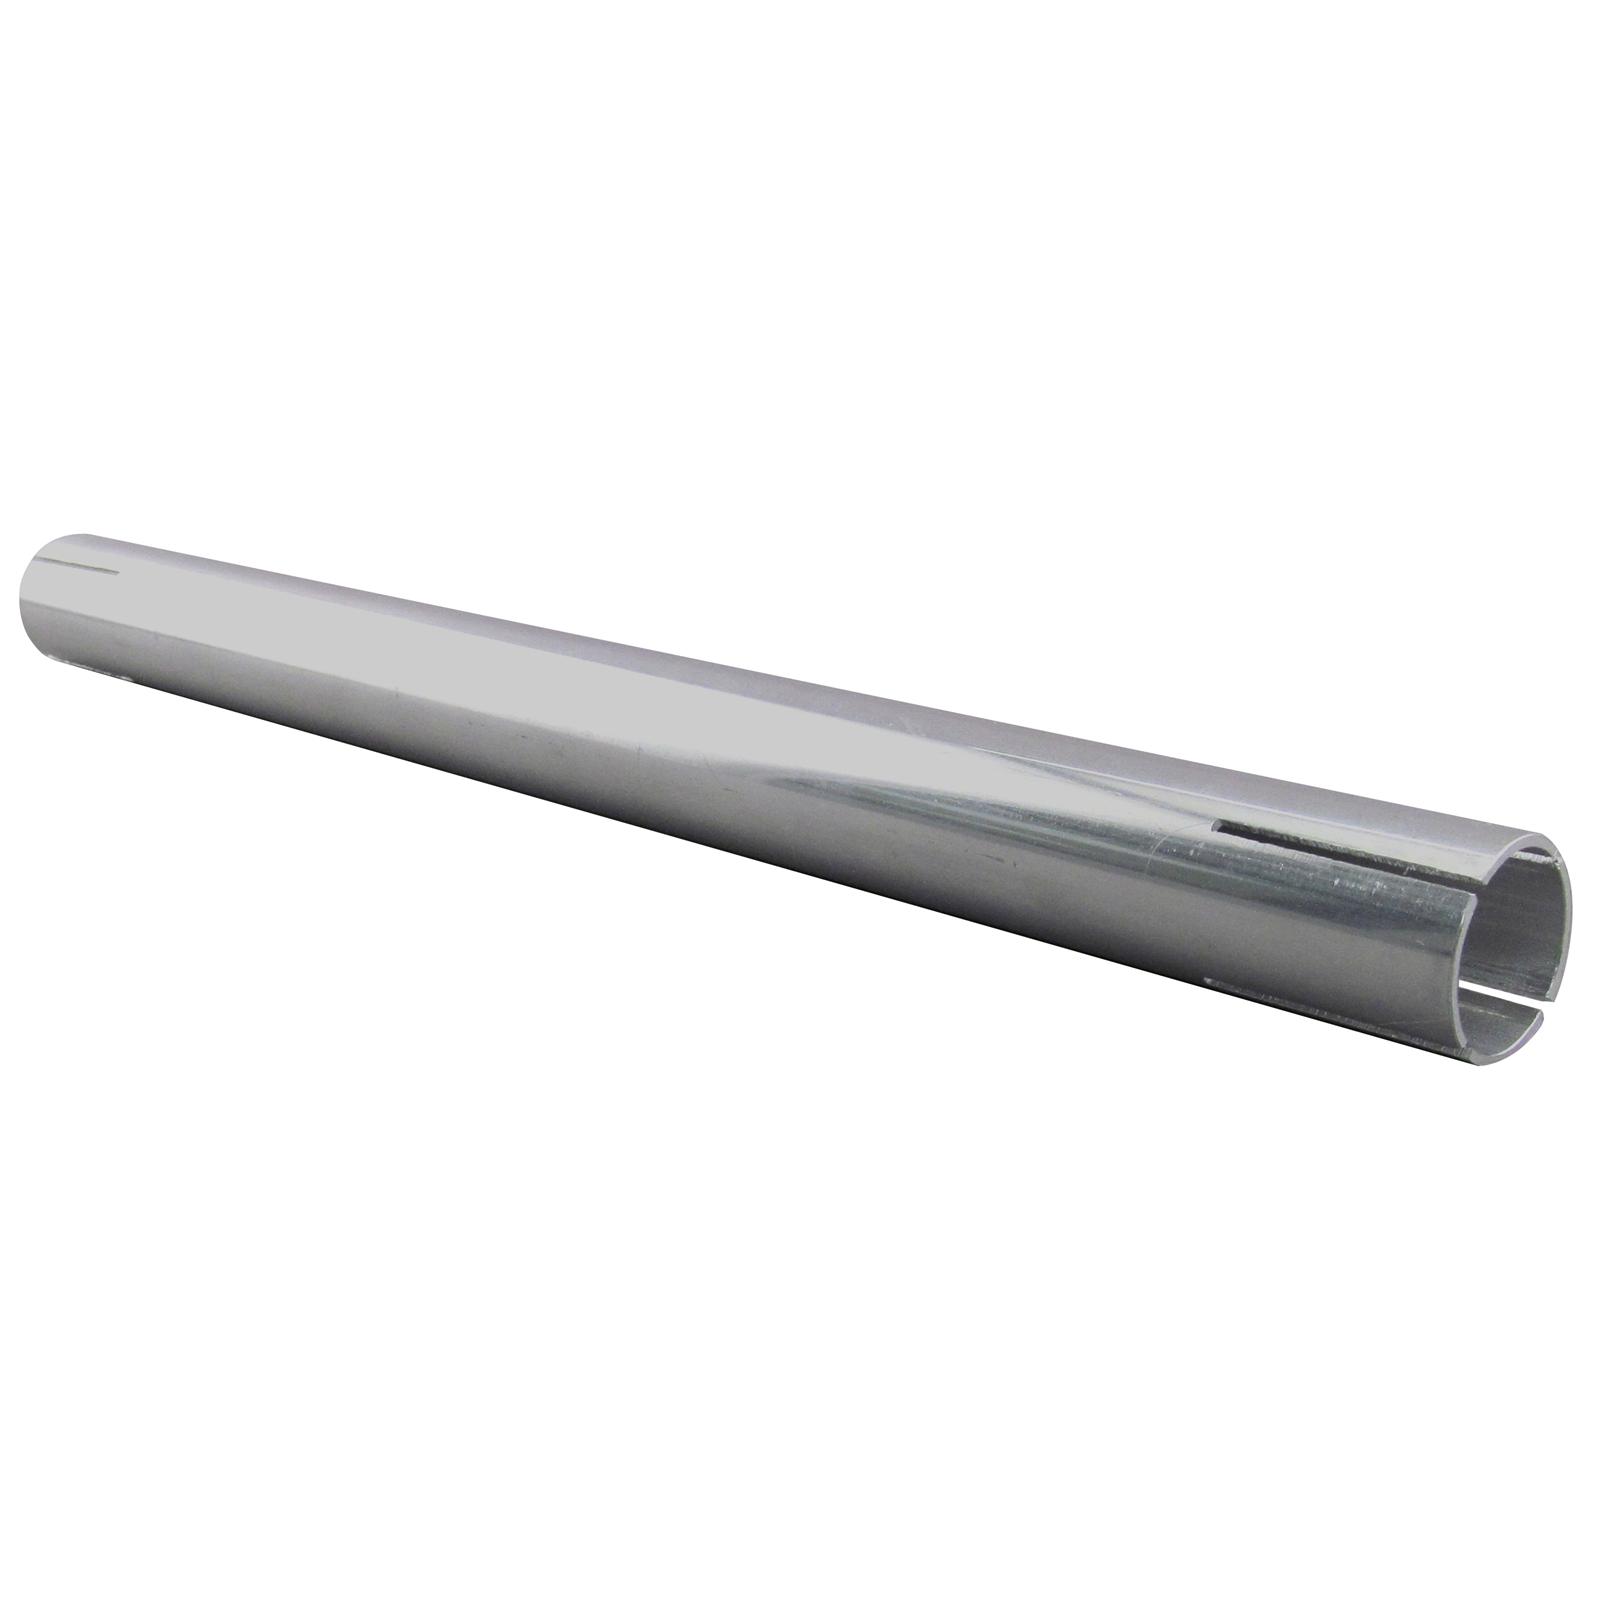 Tube Aluminium D23.5mm 